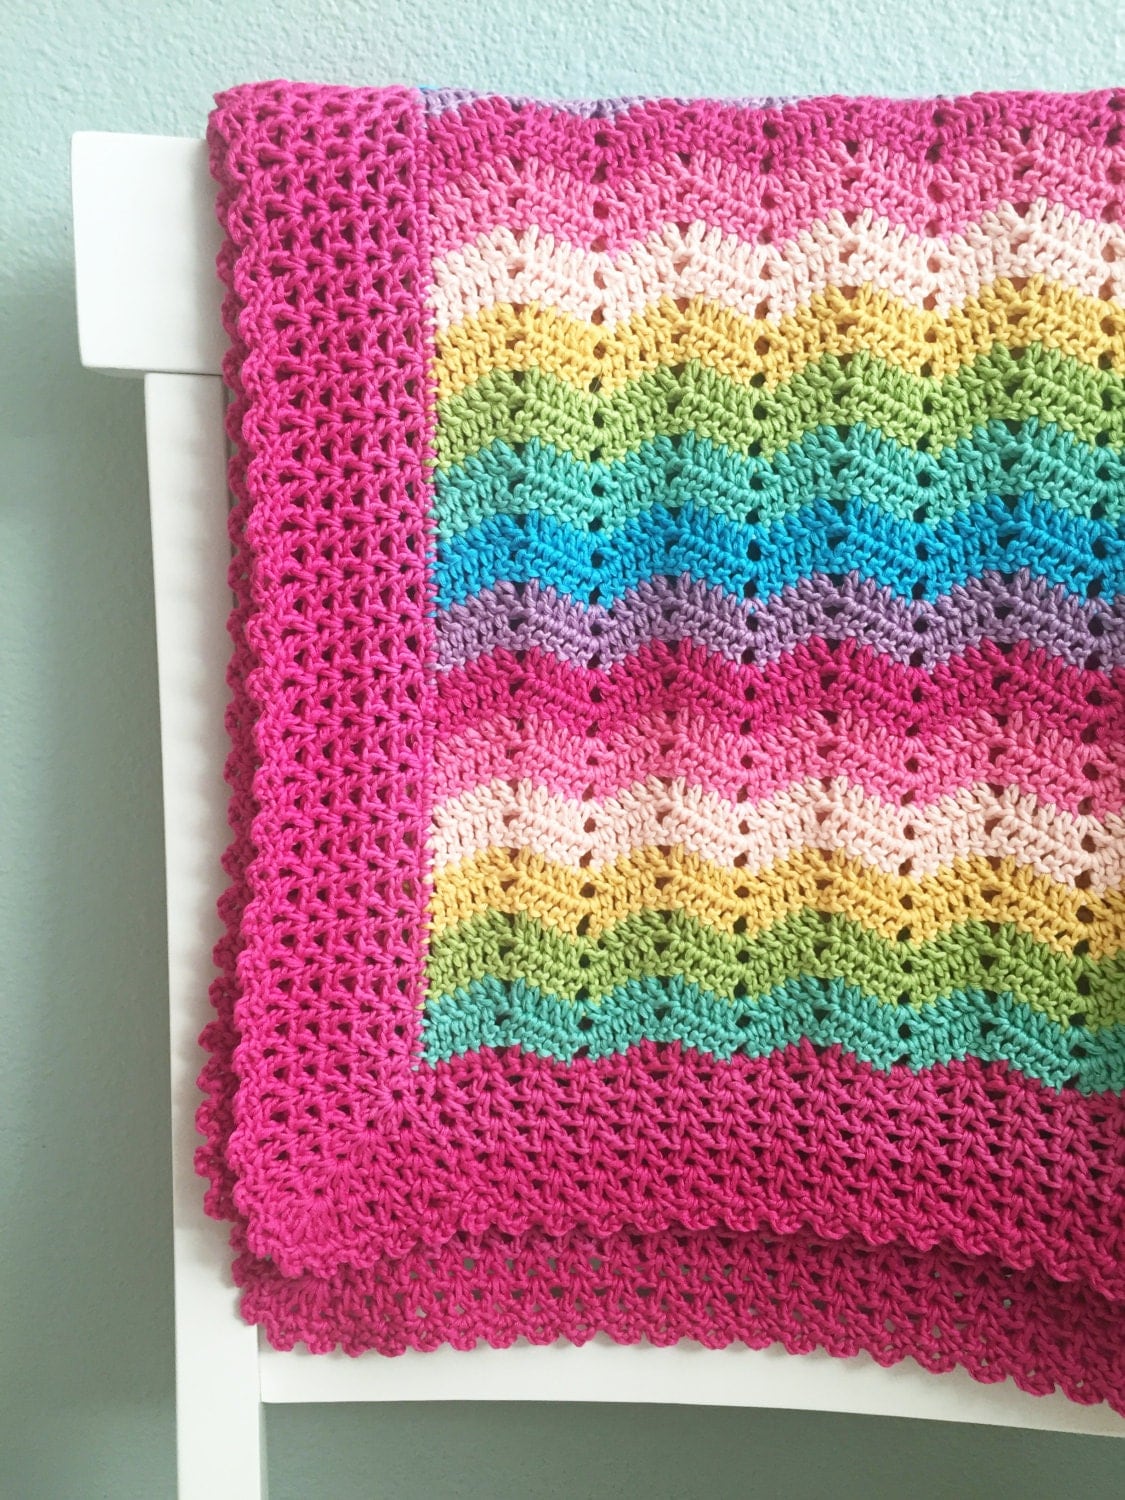 Crochet Baby Blanket Pattern Easy Ripple by DeborahOLearyPattern